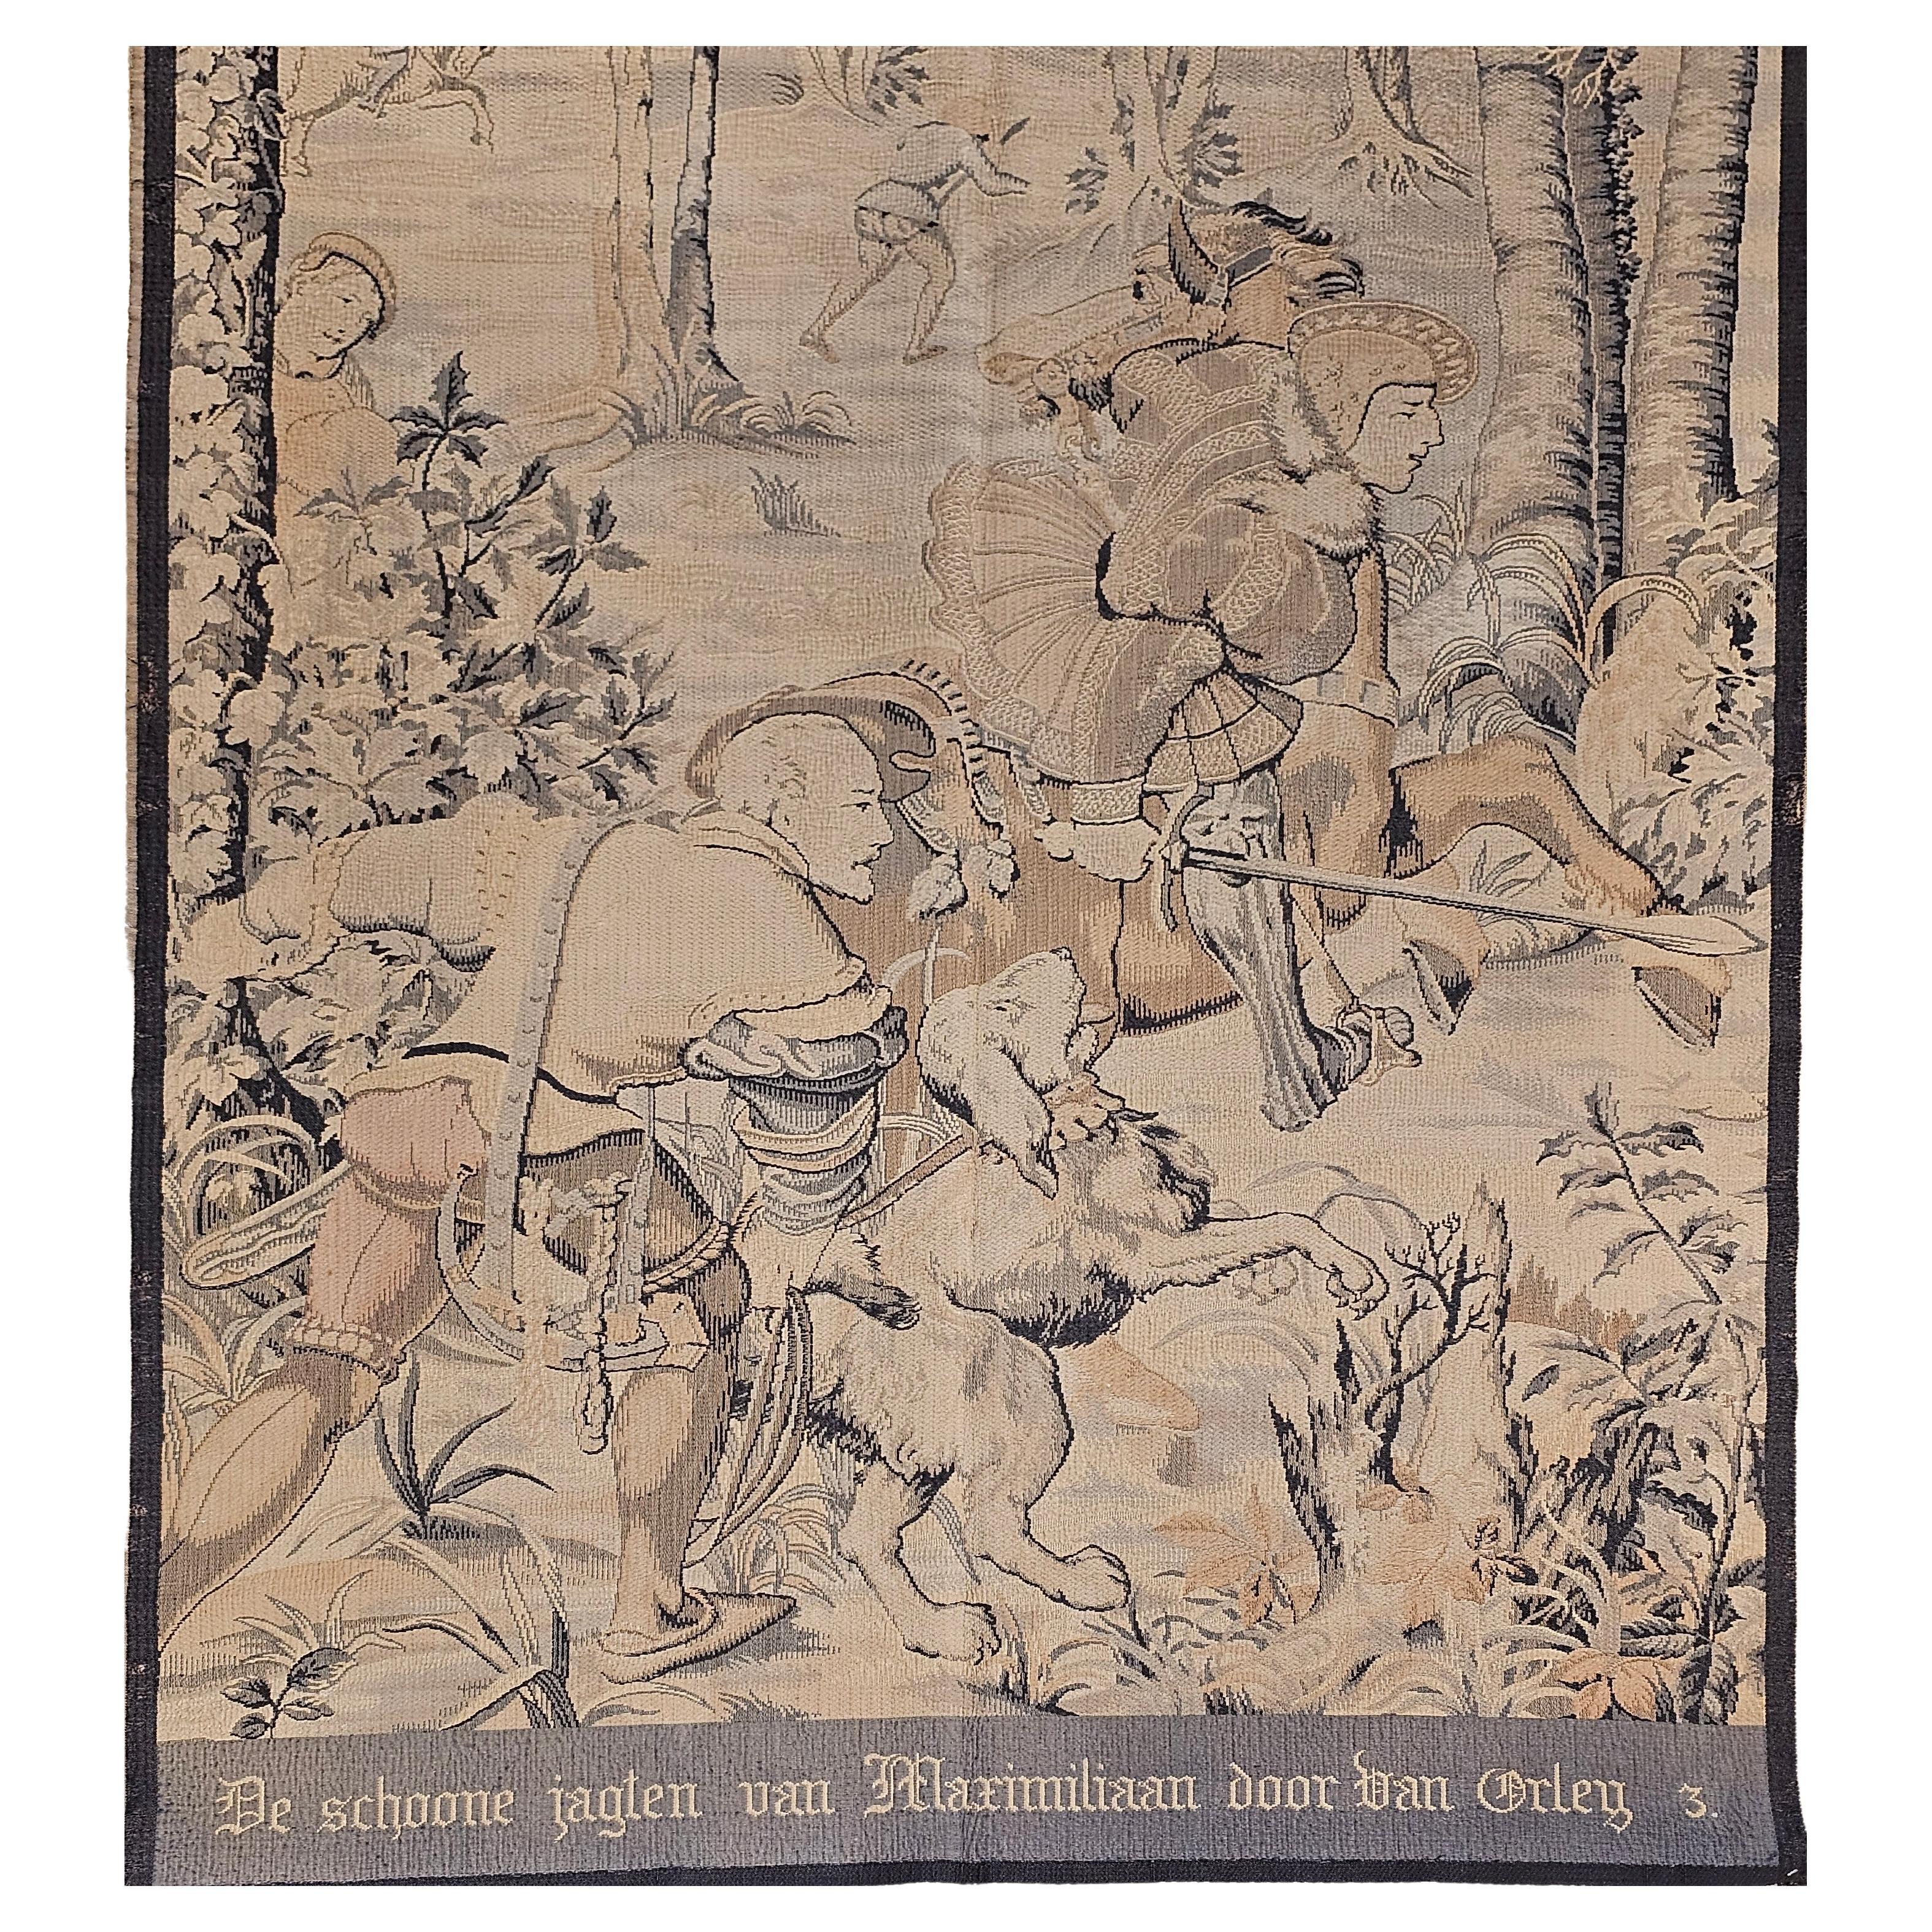 Schöner maschinengewebter französischer Jacquard-Webteppich aus dem 19. Jahrhundert, der eine Wald- und Jagdszene im Stil der belgischen Wandteppiche des 16. Dies ist eine Reproduktion einer der Tafeln (Tafel Nr. 3)  aus einer berühmten